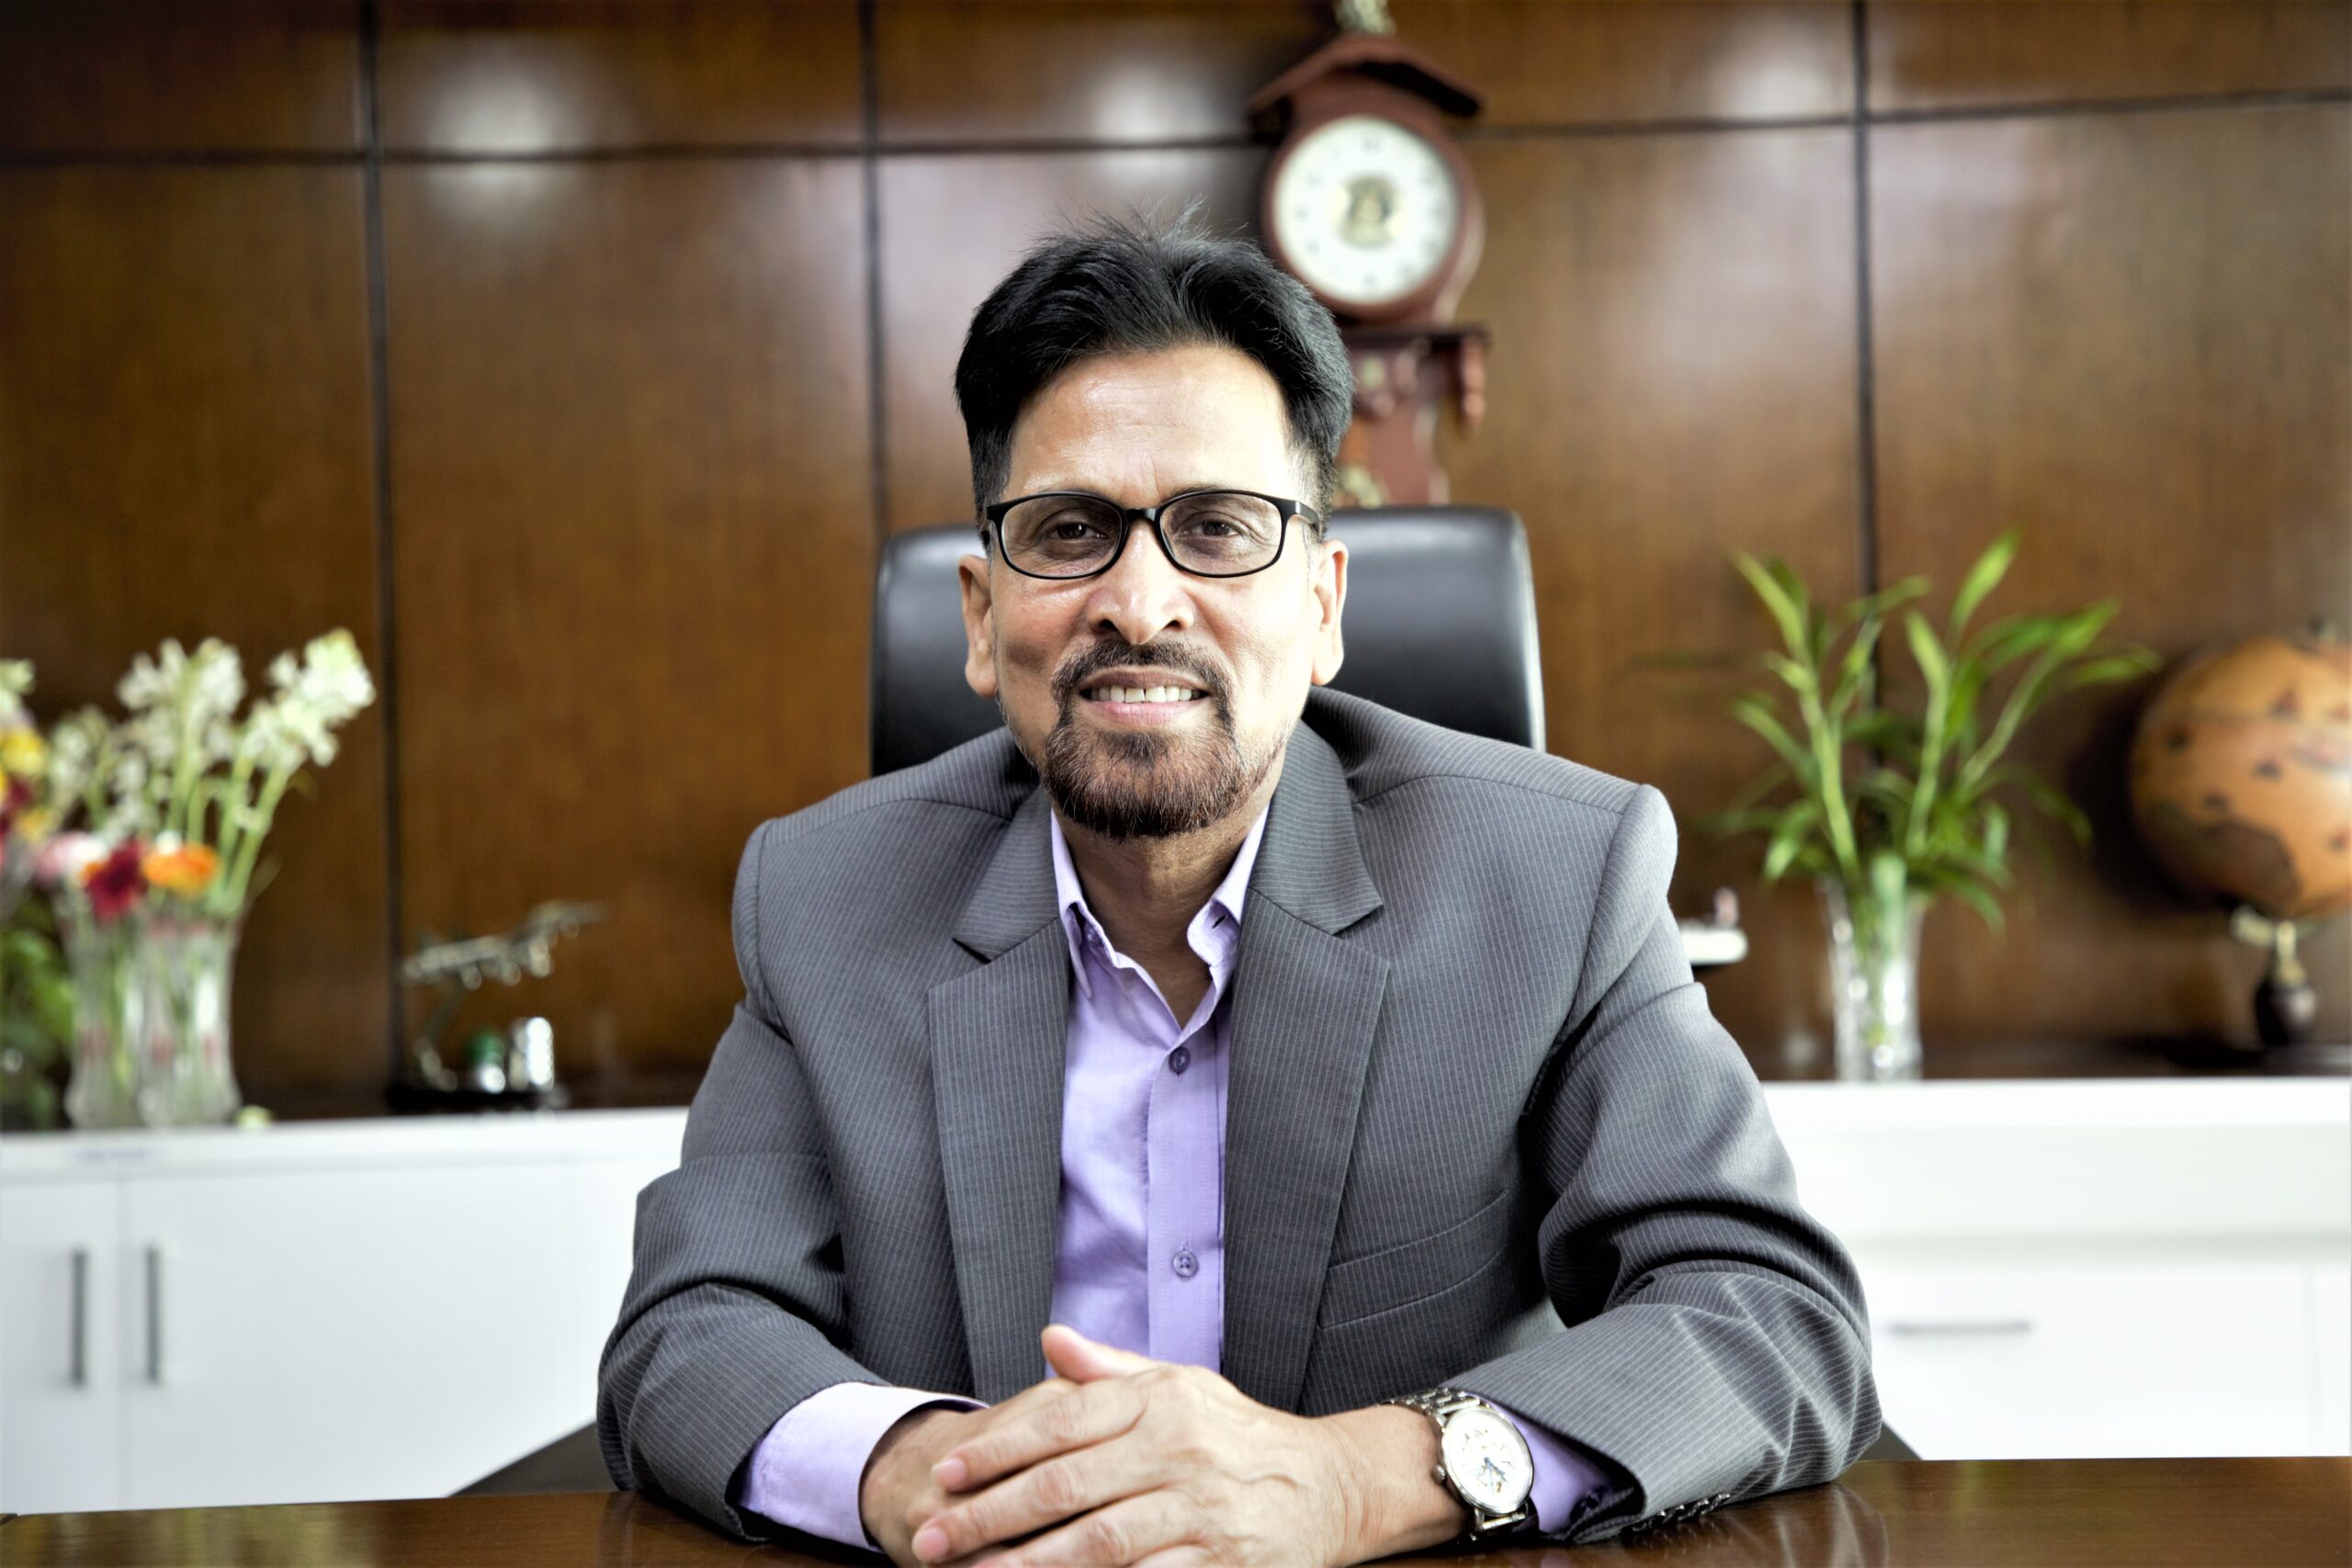 Dr. Khandaker Alamgir Hossain